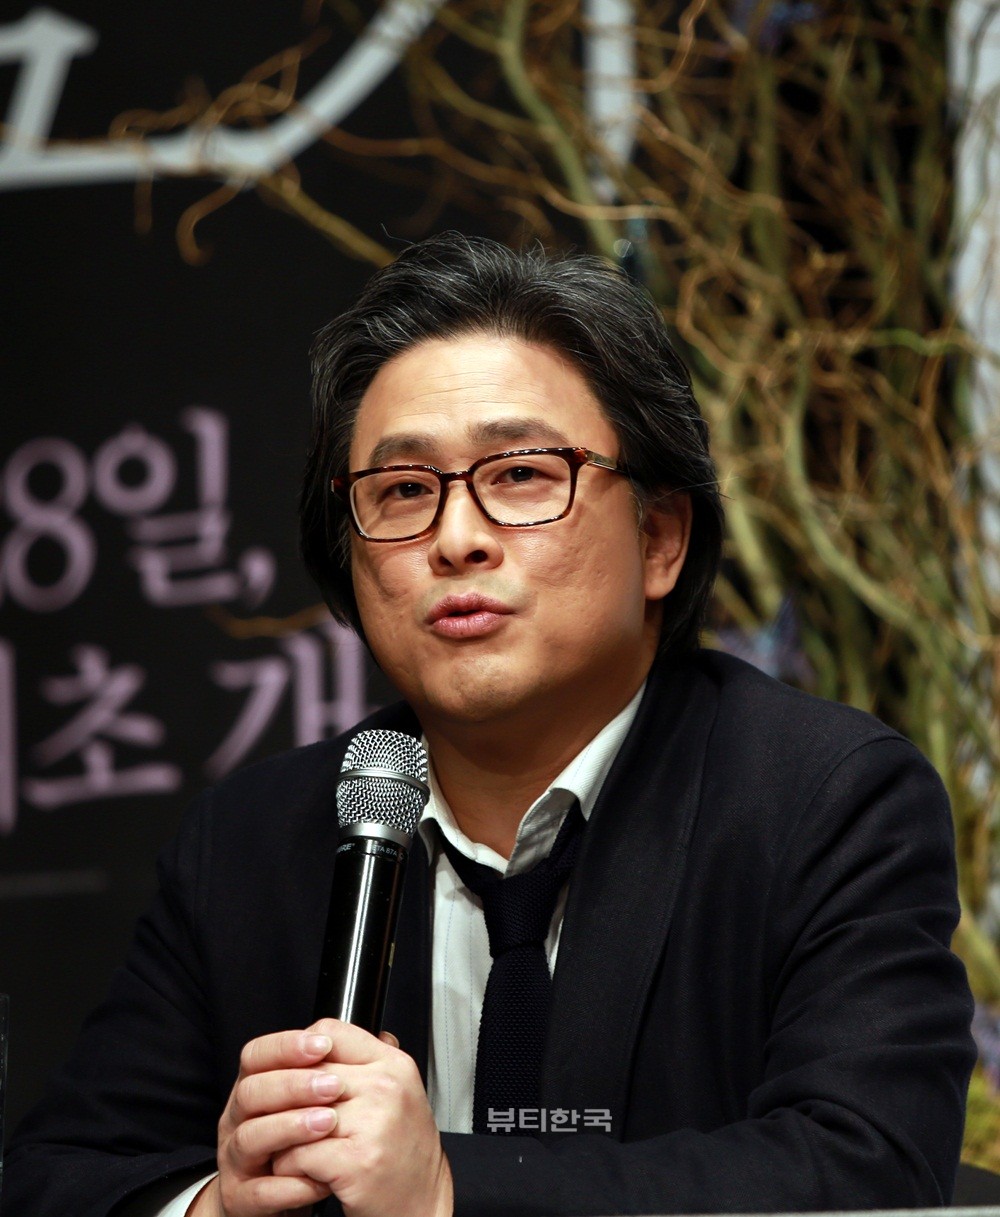 ▲ 스토커에 대한 한국의 반응을 기대한다고 밝힌 박찬욱 감독